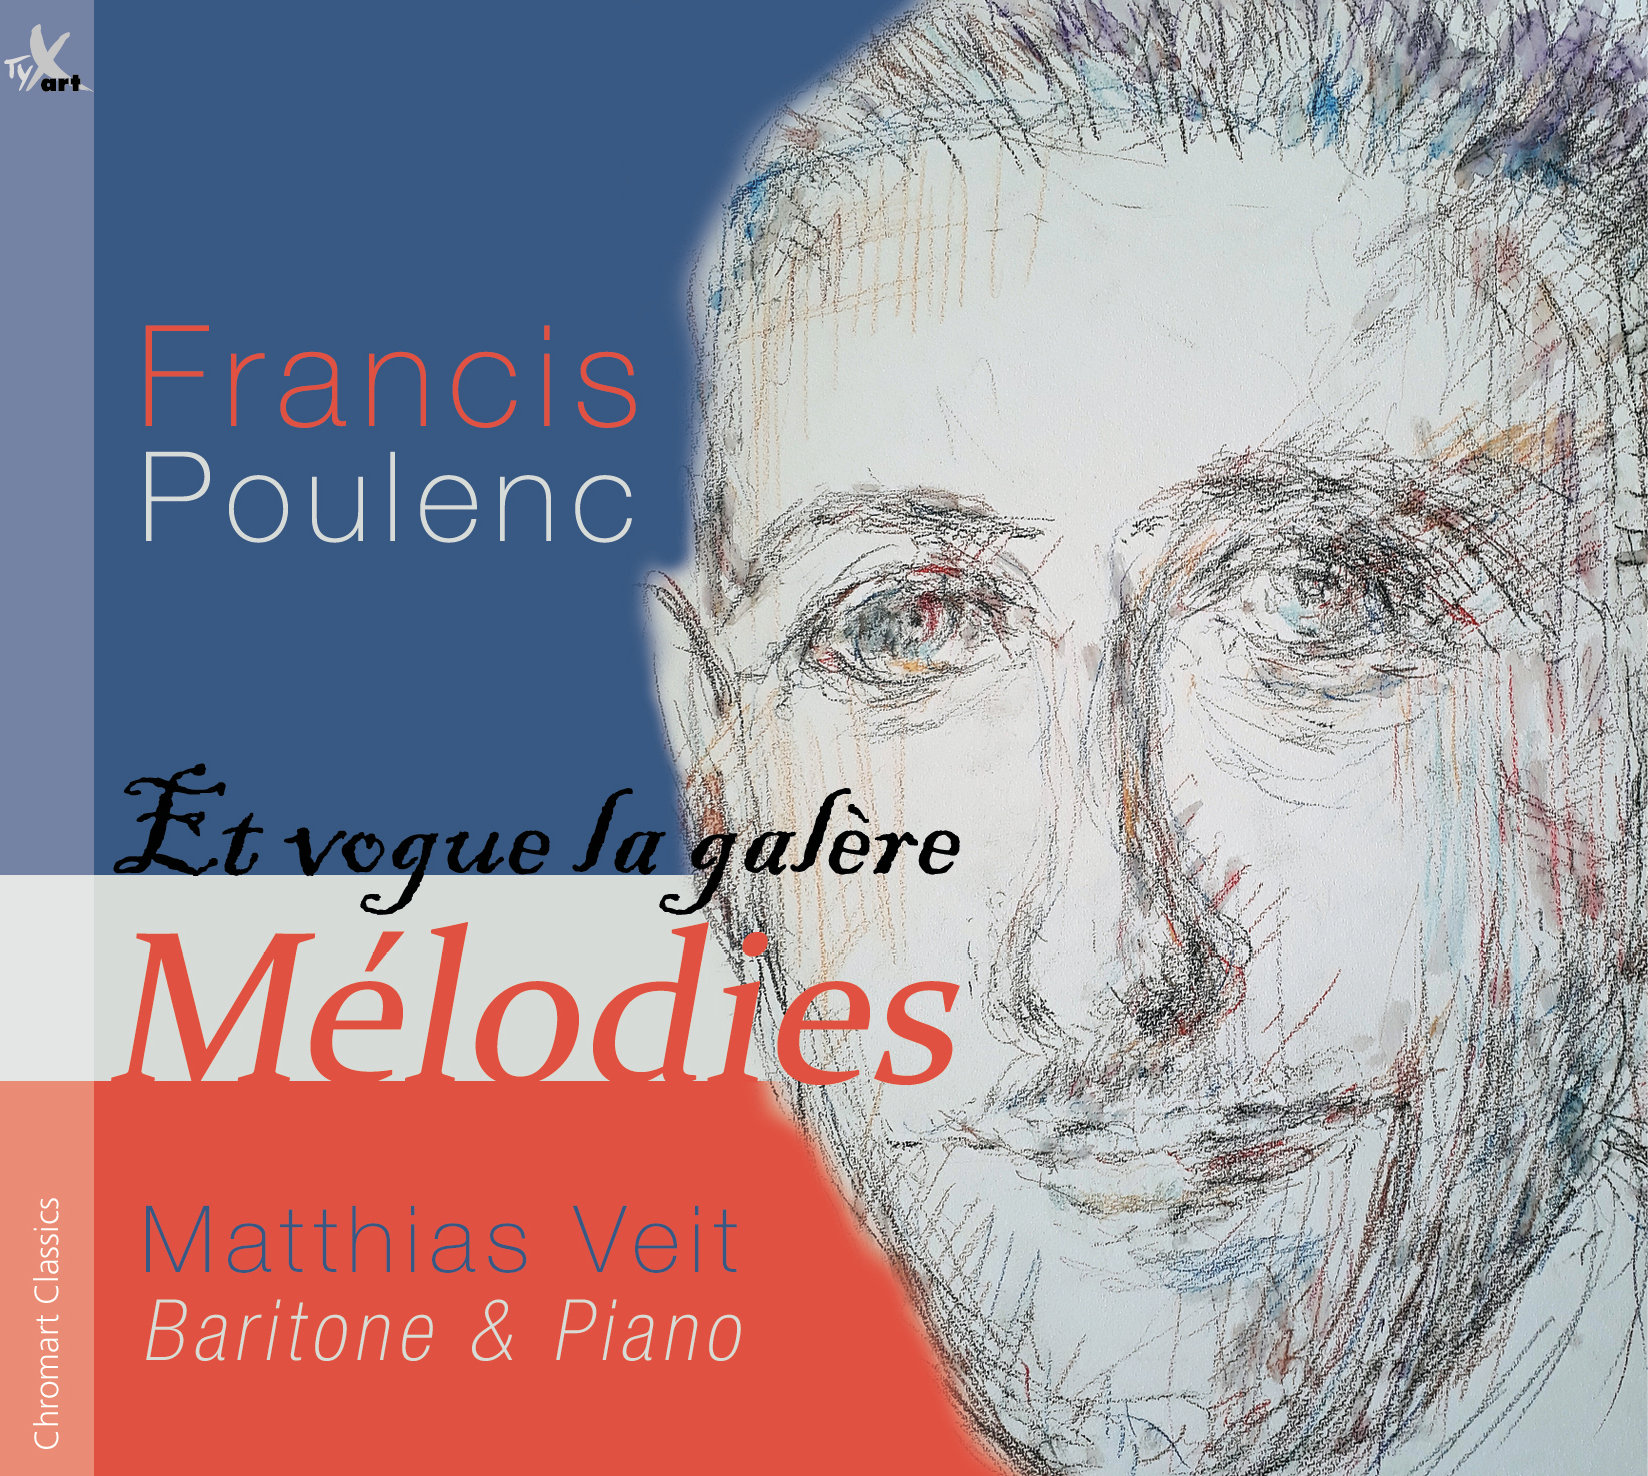 Francis Poulenc - Et vogue la galère - Mélodies - Matthias Veit